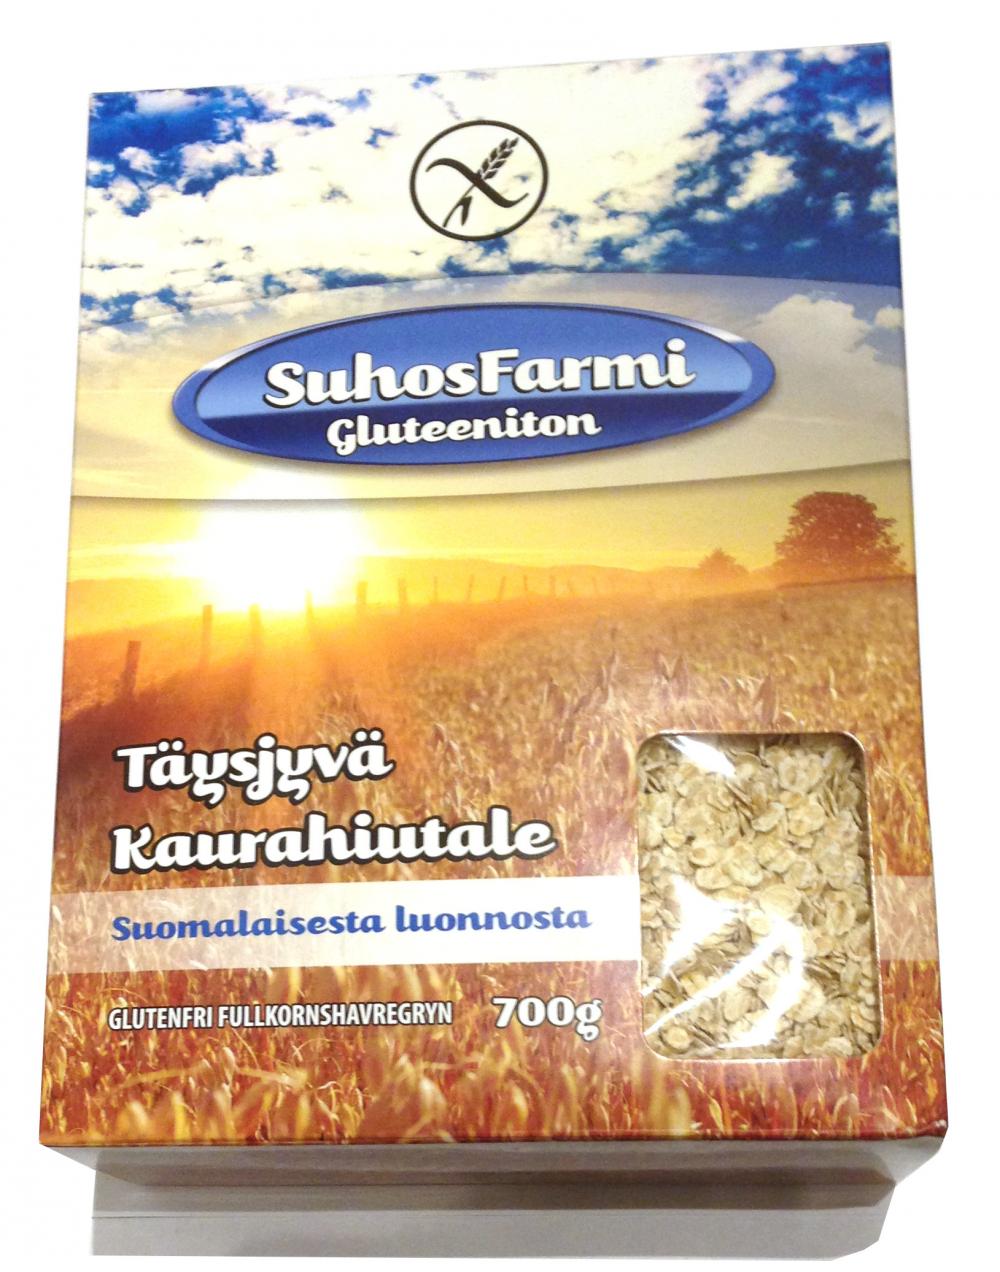 SuhosFarmi Gluteeniton tysjyvkaurahiutale 700 g